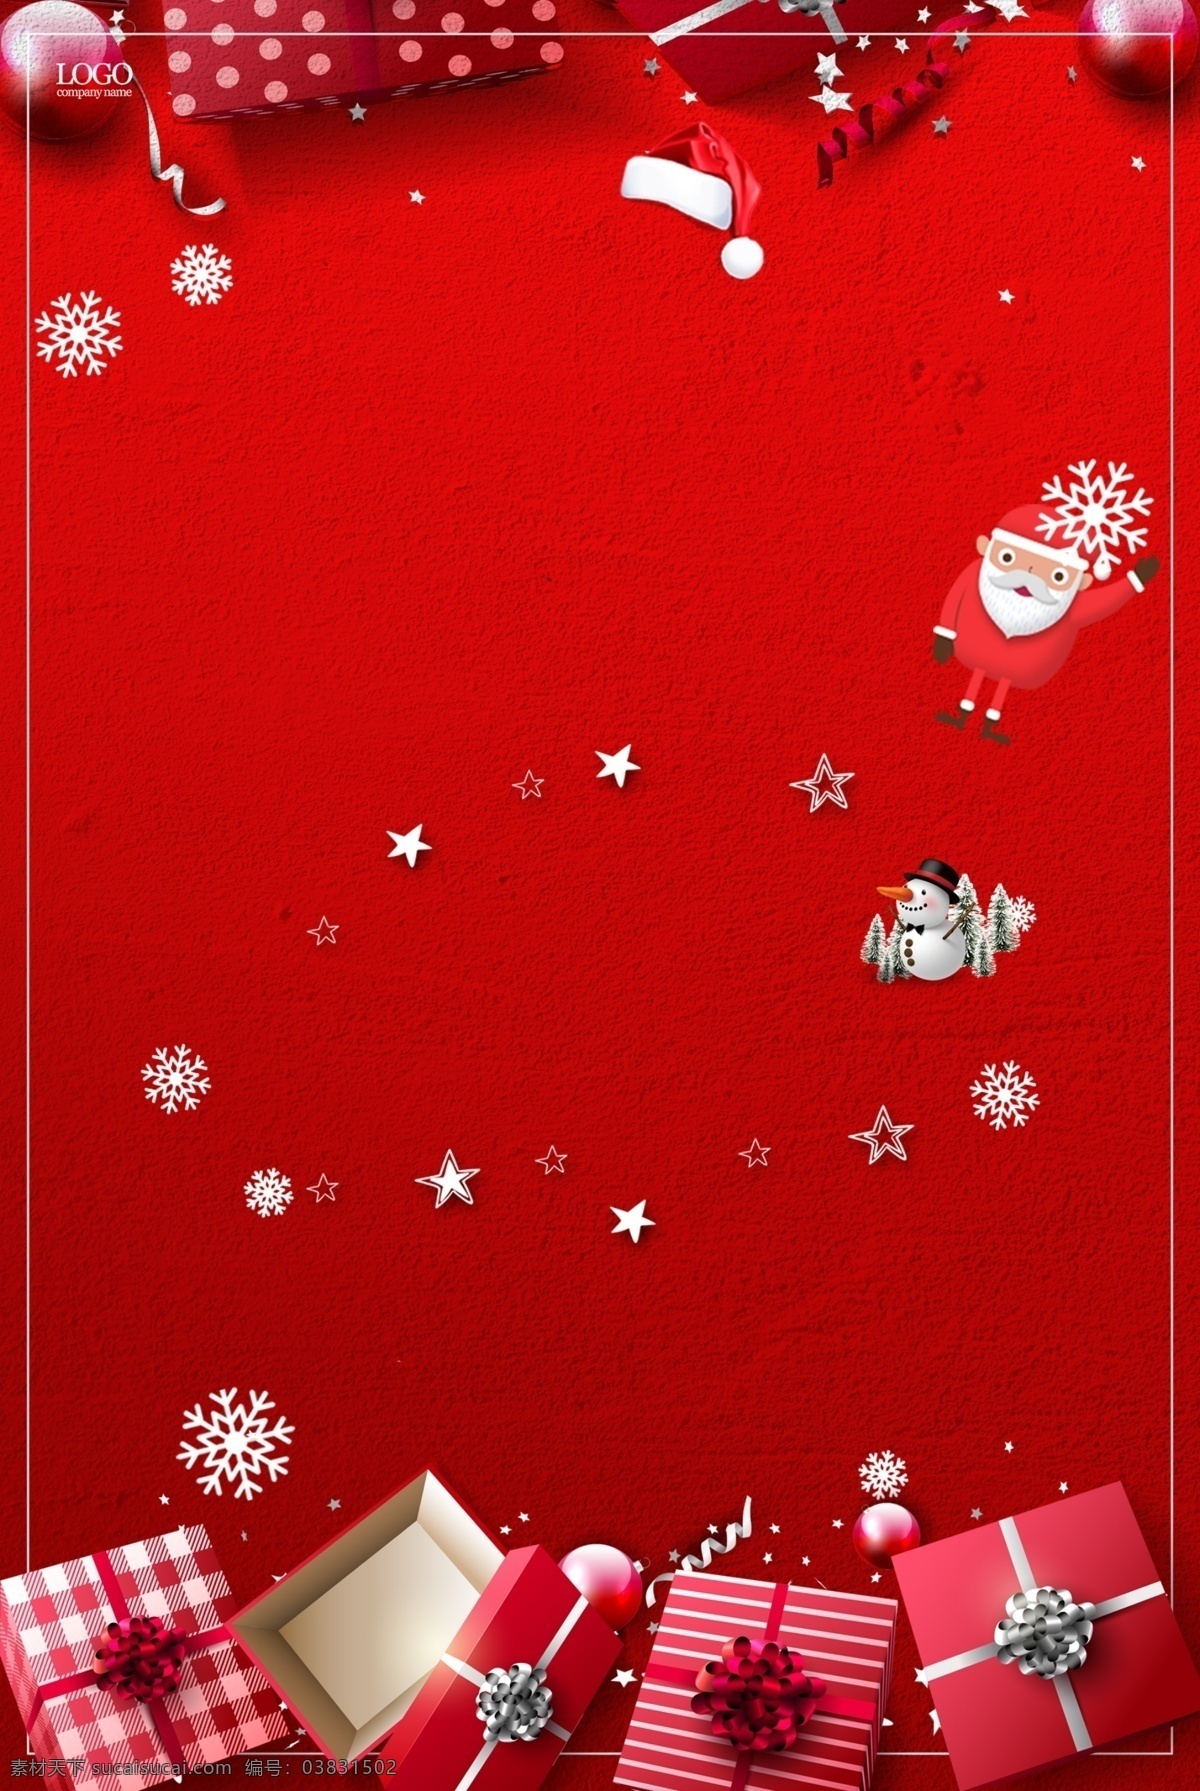 圣诞节 主题 促销 海报 背景 红色 雪花 礼物 圣诞素材 圣诞快乐 雪人 圣诞狂欢 圣诞主题 圣诞大促 圣诞礼物 圣诞活动背景 圣诞节展板 新年海报 节日背景